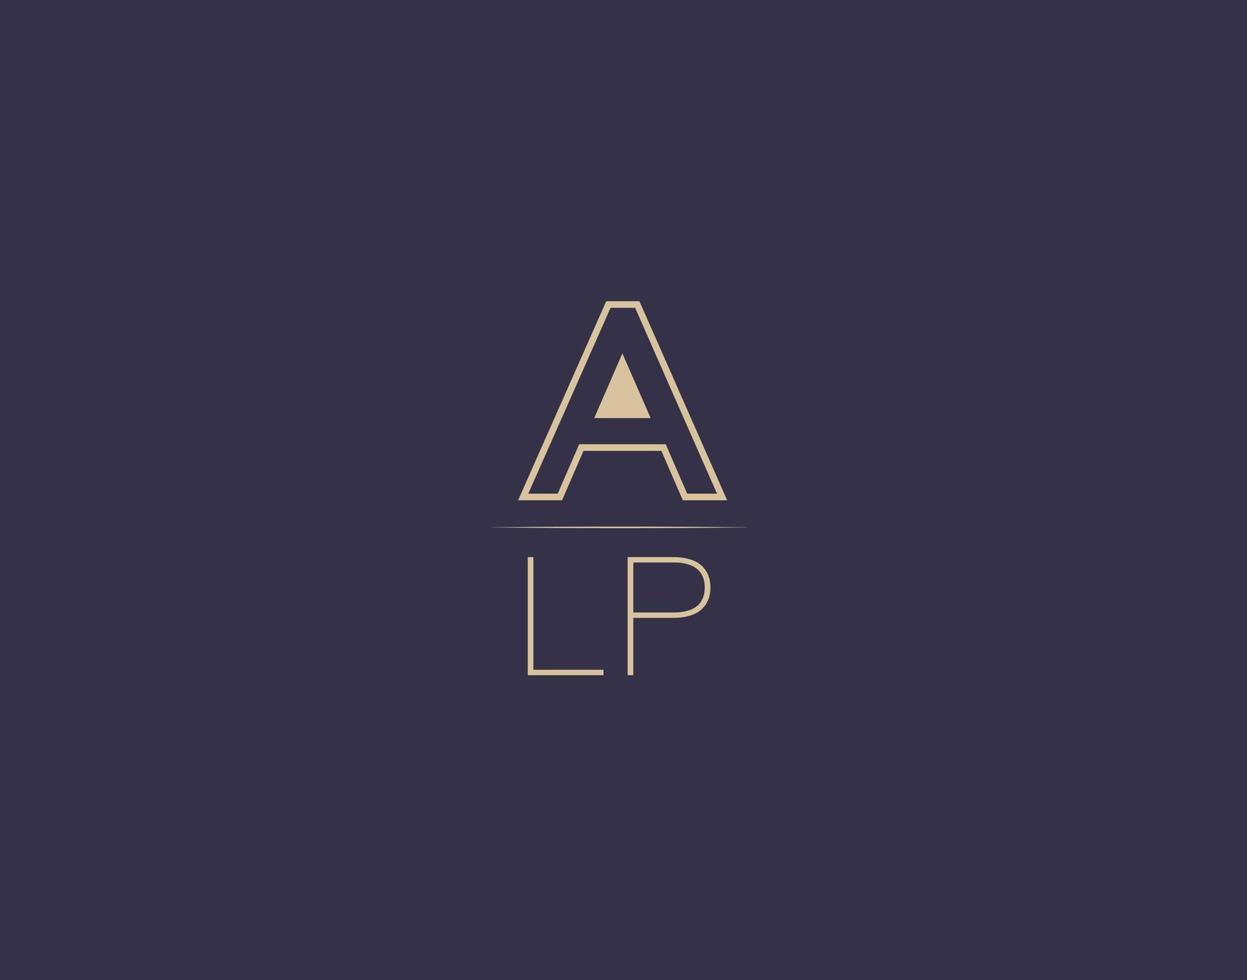 alp carta logo diseño moderno minimalista vector imágenes